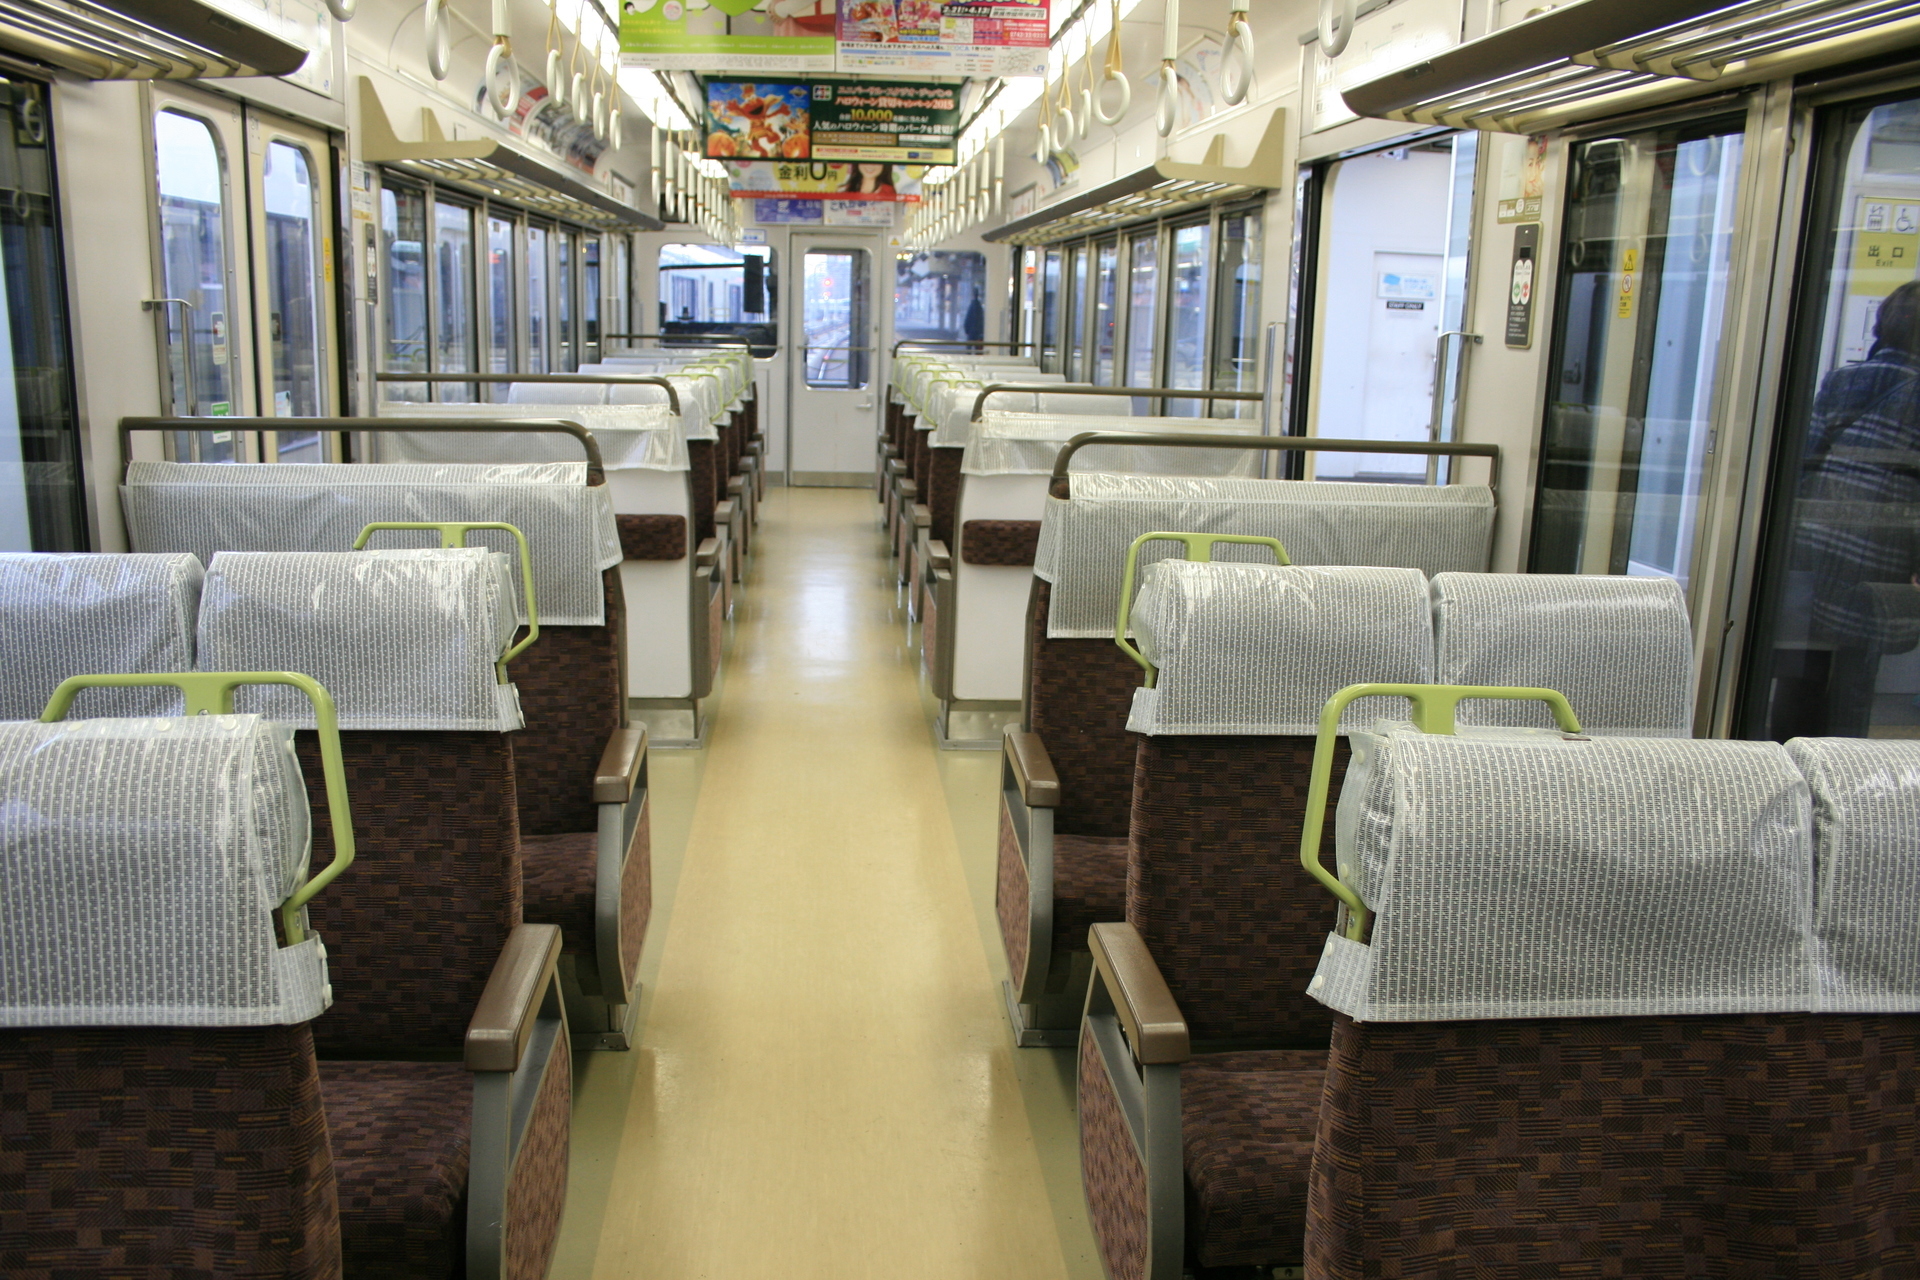 線 jr 奈良 奈良線の複線化・改善計画の全まとめ。京都～城陽間が全線複線、京都駅ホームも大幅改造が実現。